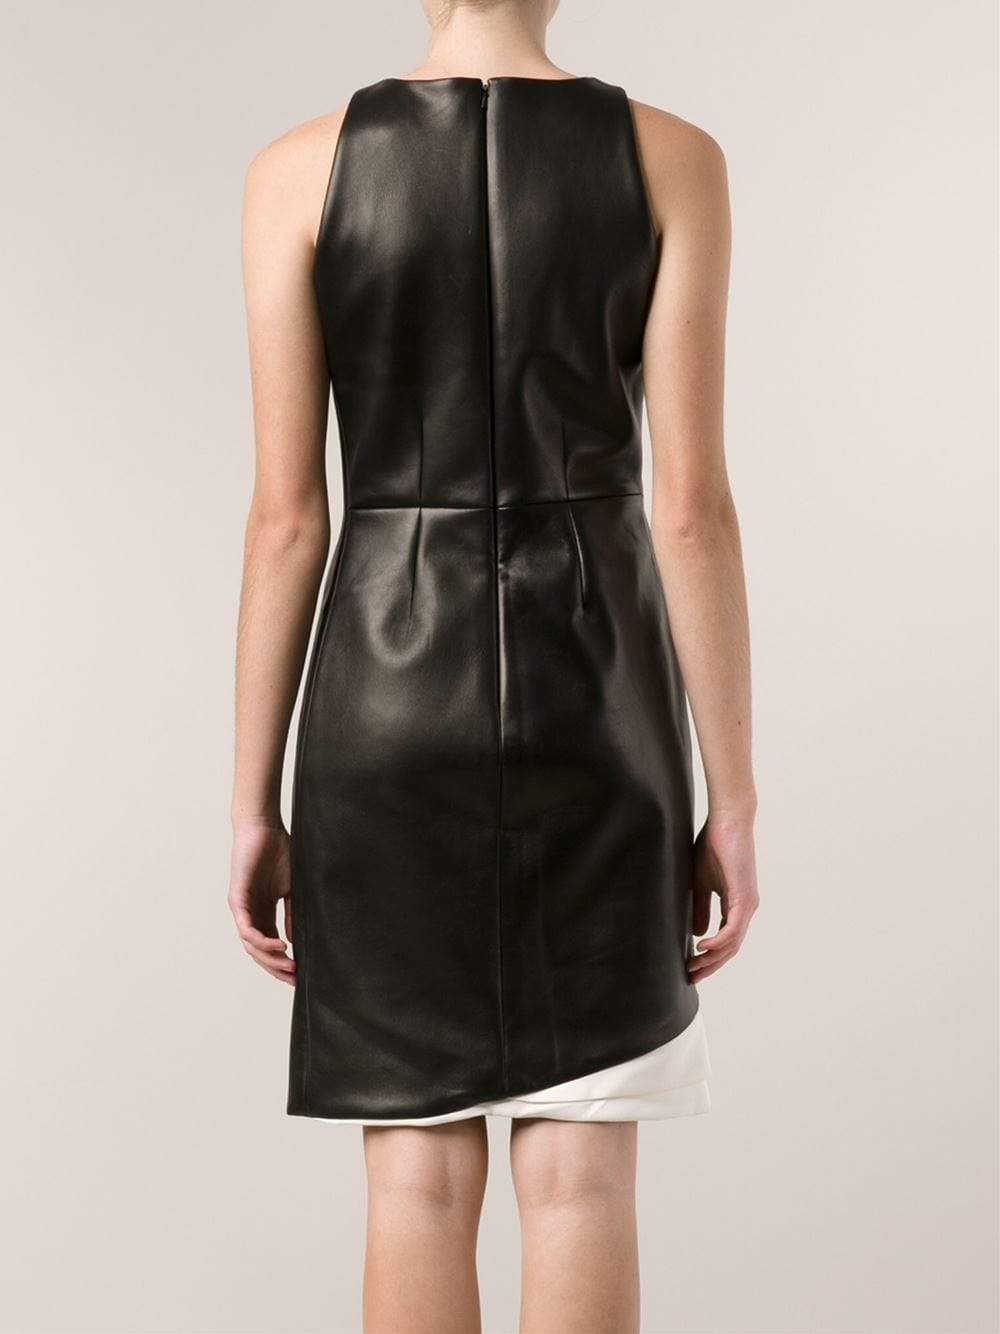 J MENDEL-Halter Dress With Leather Back-FOREST